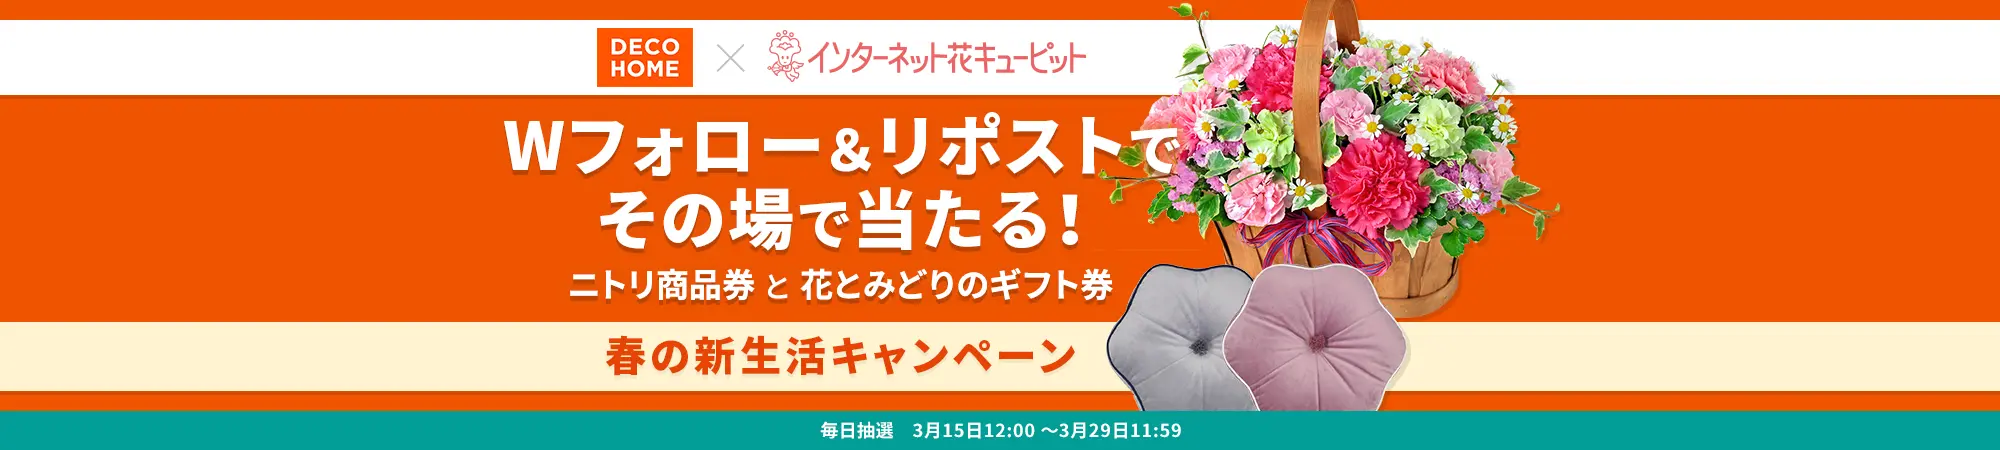 デコホーム ×花キューピット 春の新生活キャンペーン